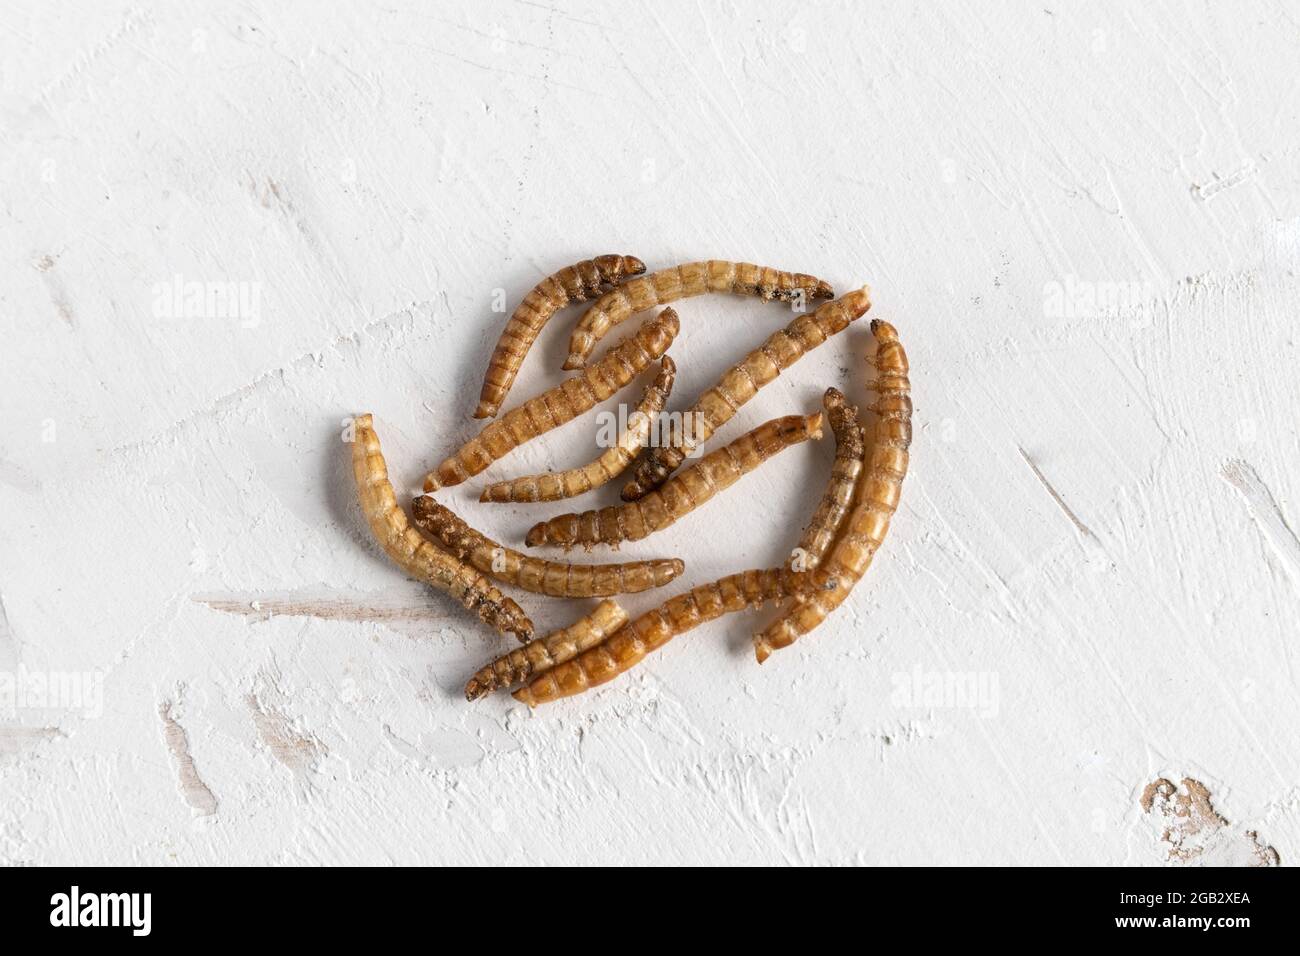 proteína de los gusanos de mealworms para la alimentación del hámster Foto de stock